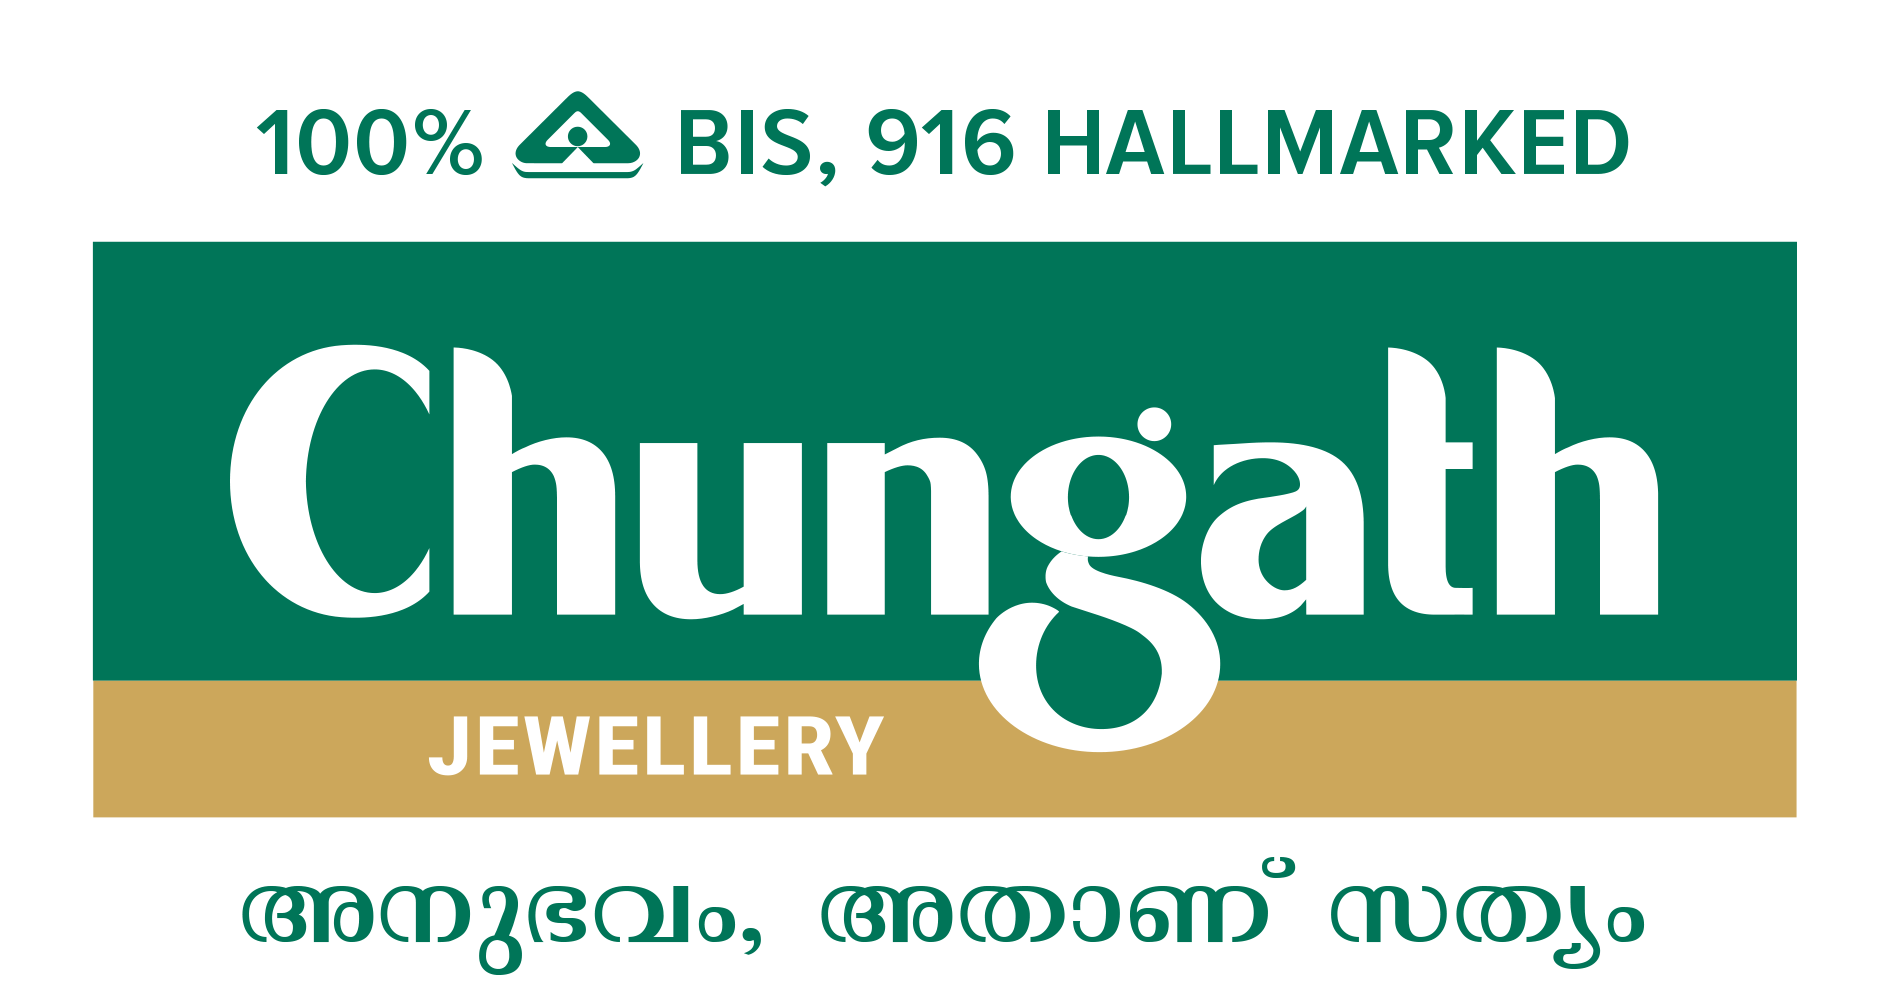 PURABI N 2853-13(Calcutta design gold necklace)